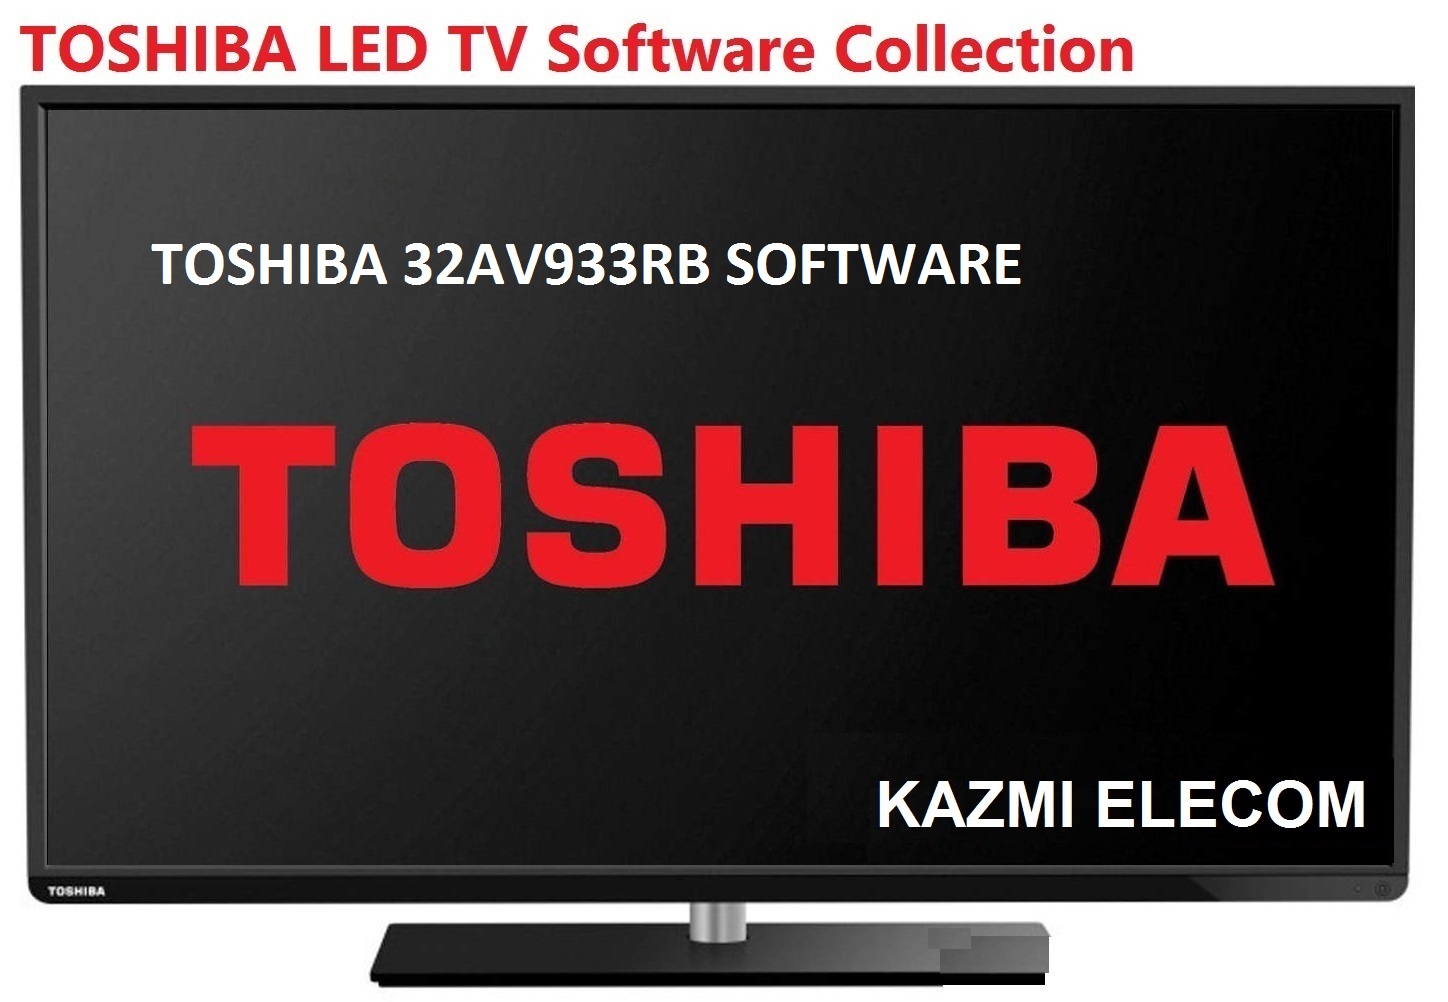 Toshiba 32Av933Rb